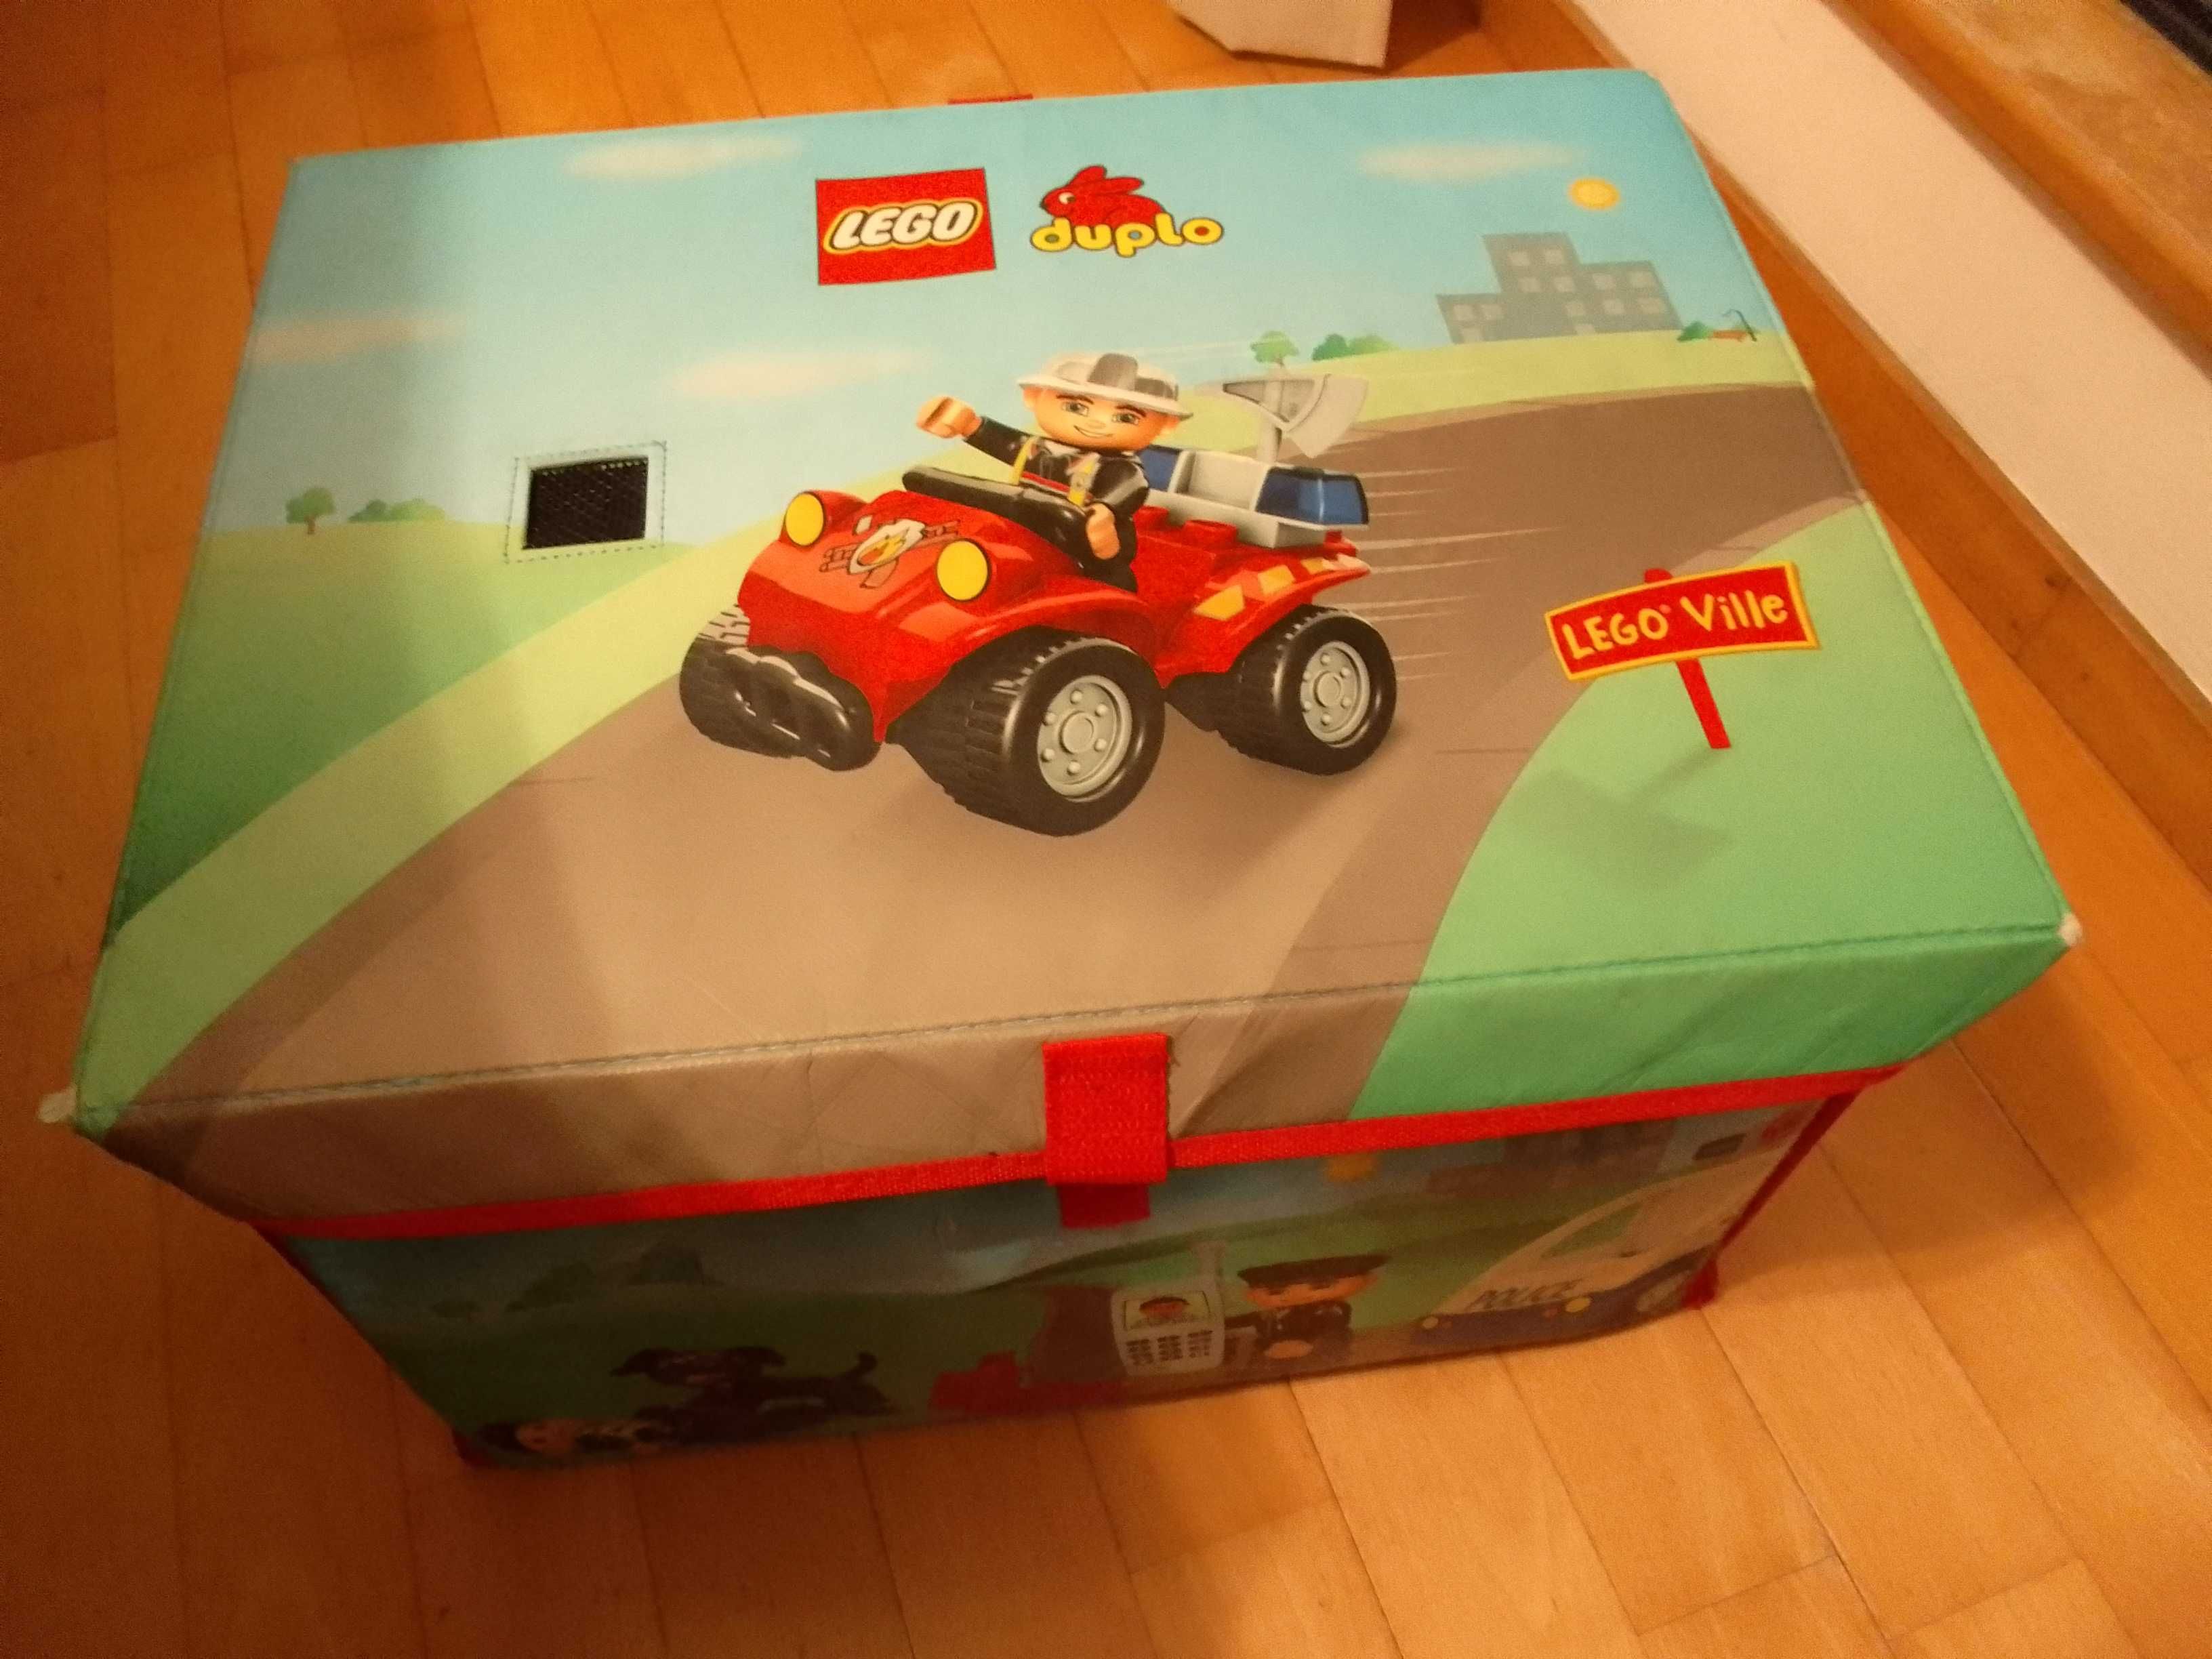 Caixa para guardar brinquedos da Lego